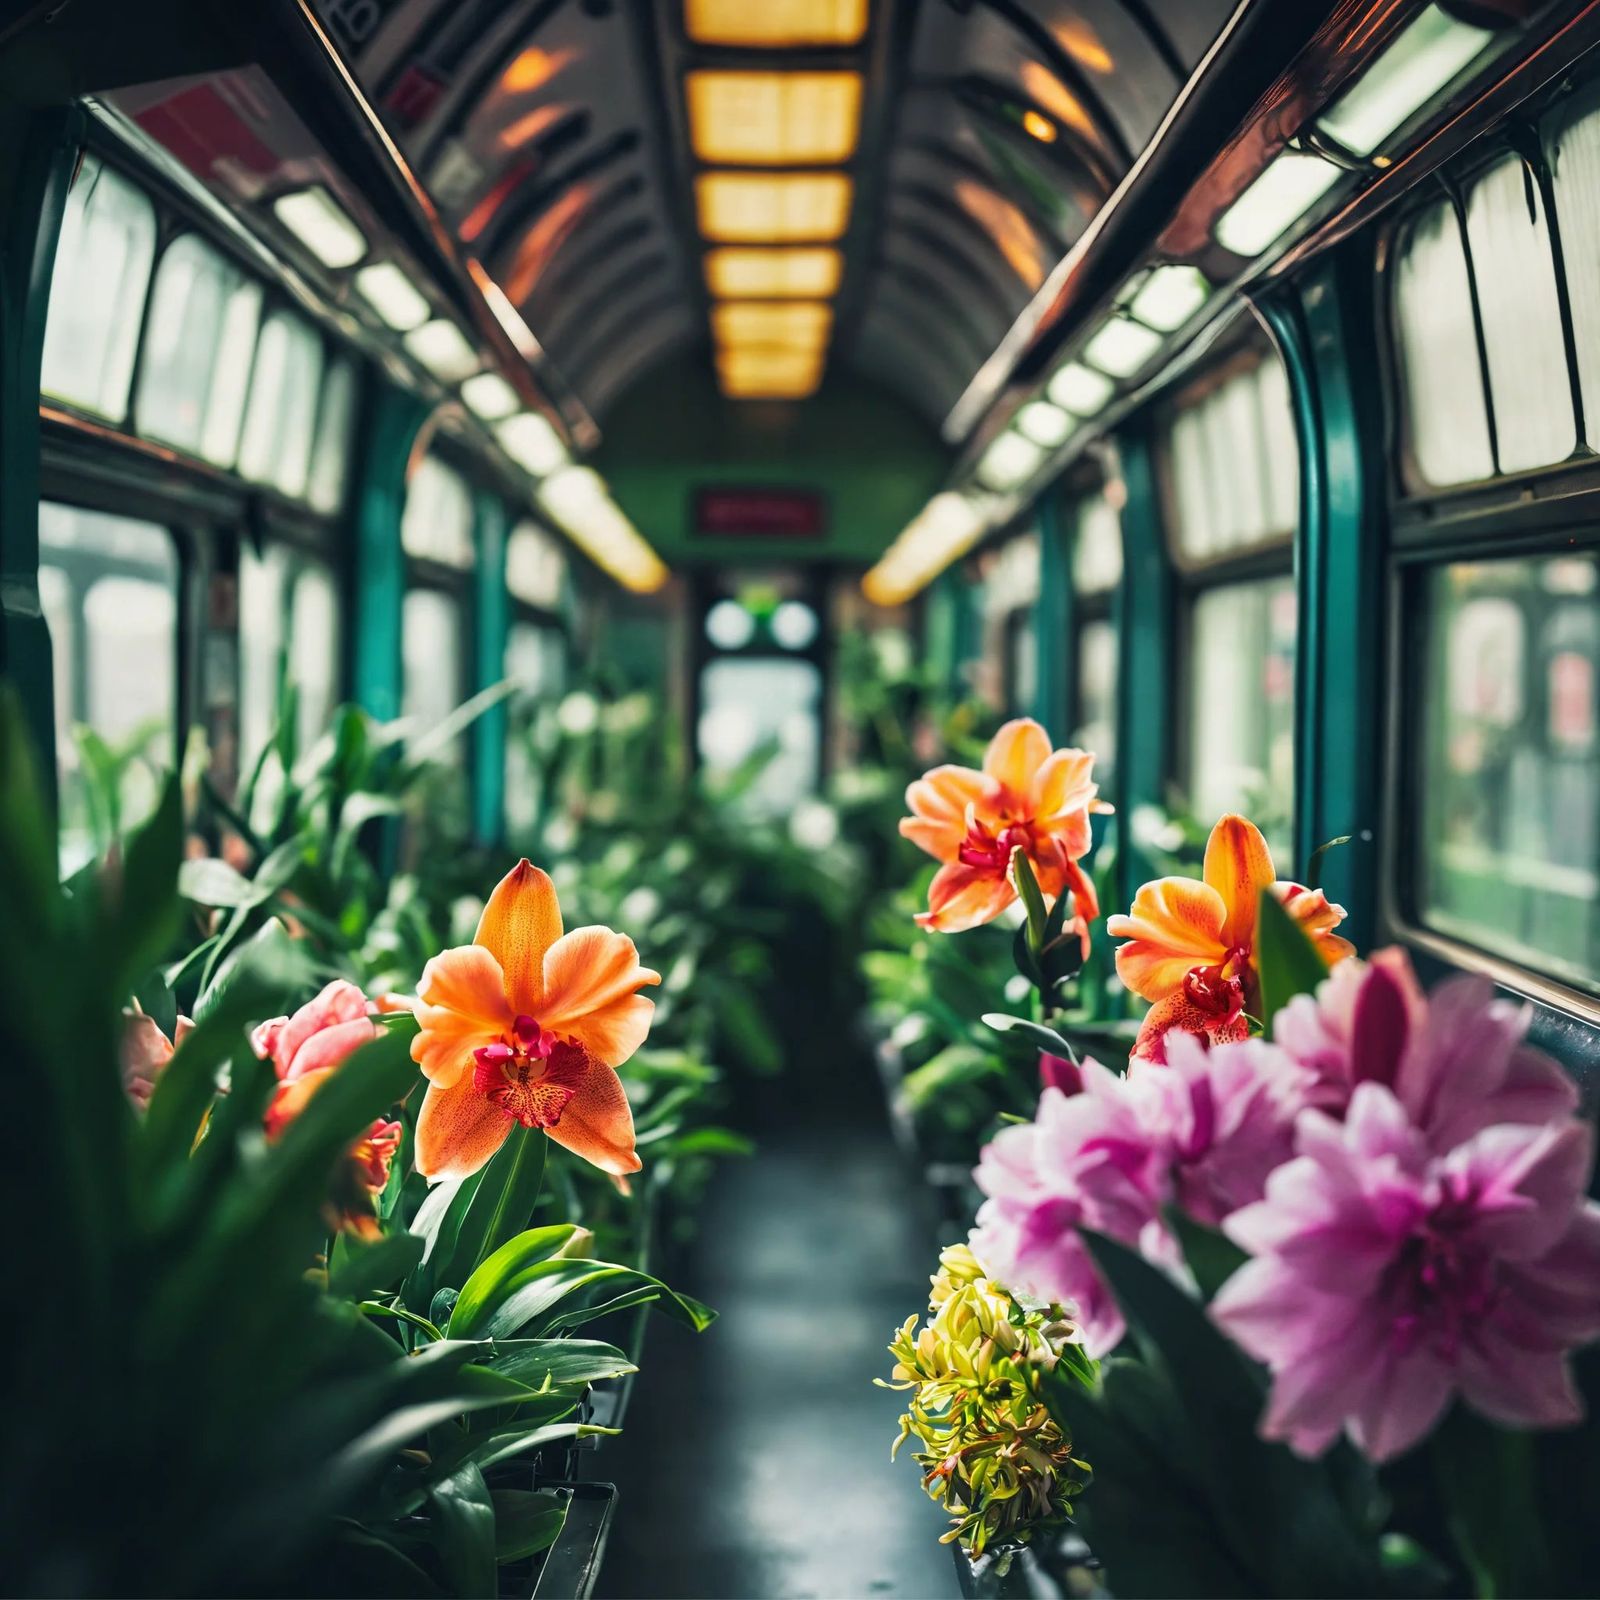 Subway as a botanical garden